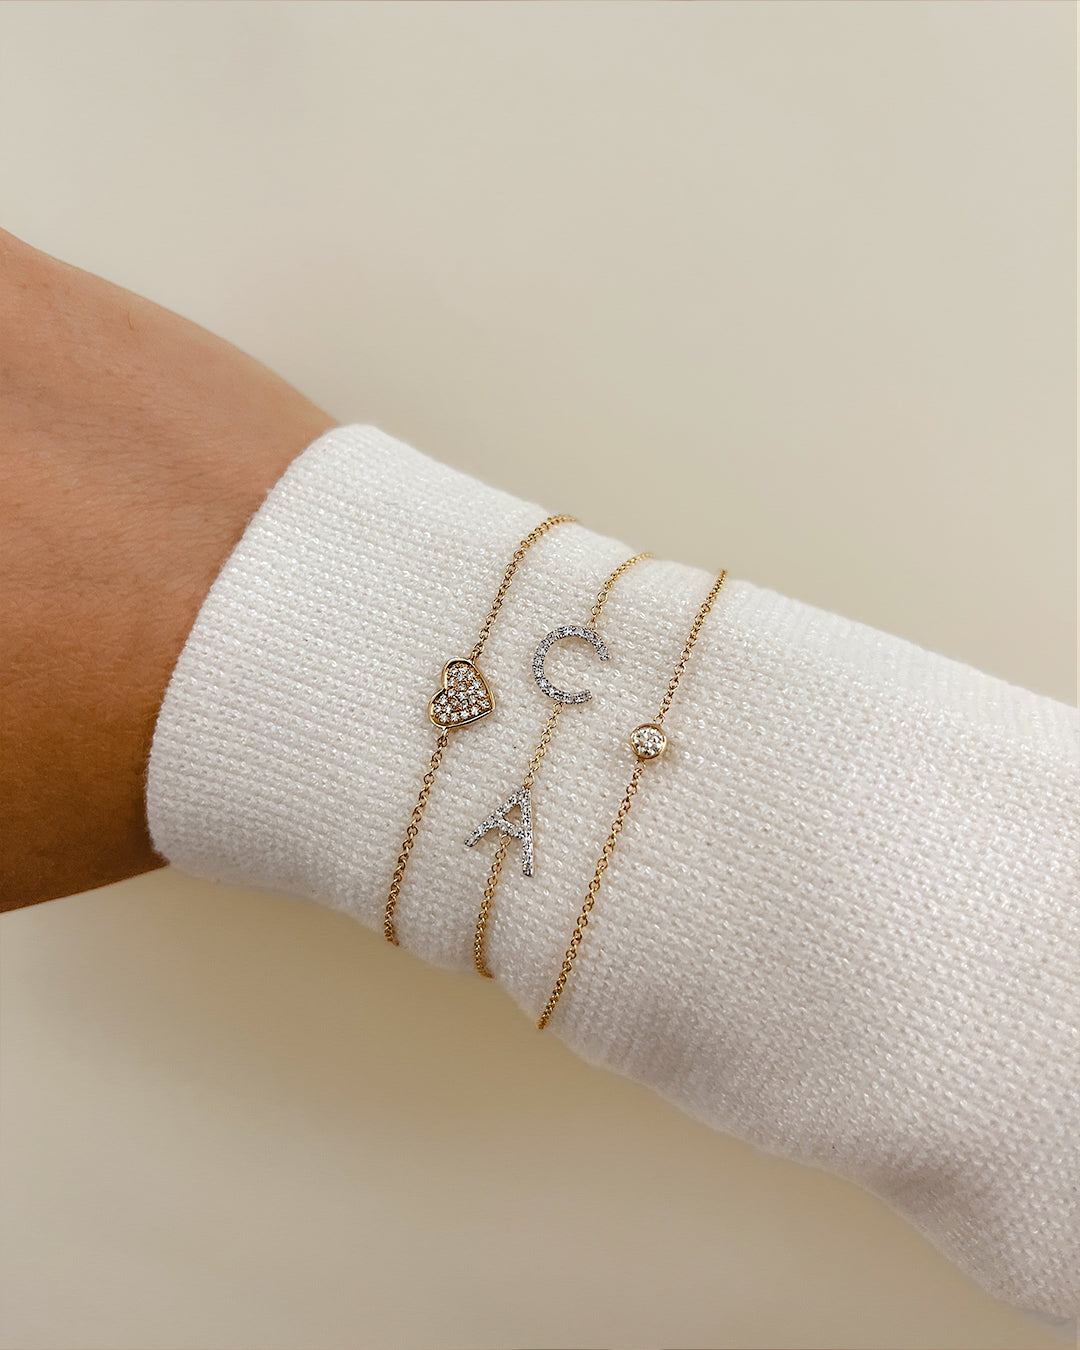 Zoe Lev Jewelry - Diamond Initial Bracelet